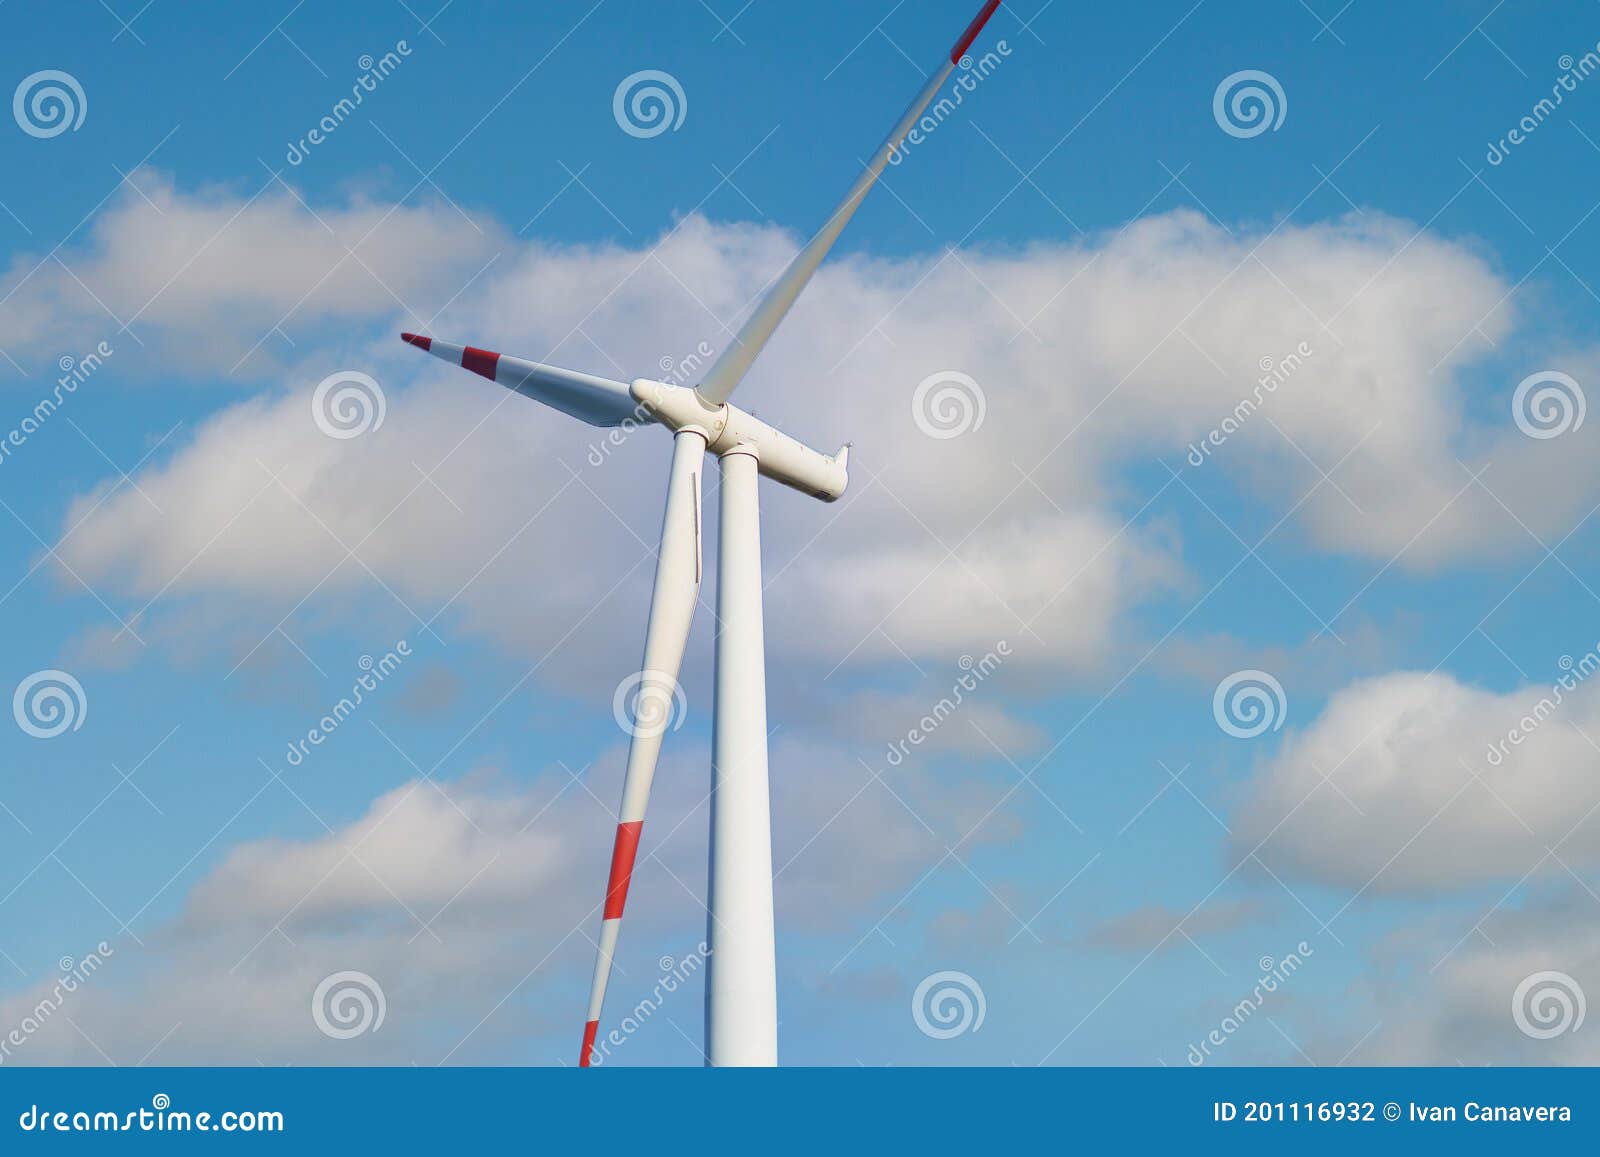 wind turbine with beautiful blue sky, villacidro,south sardinia